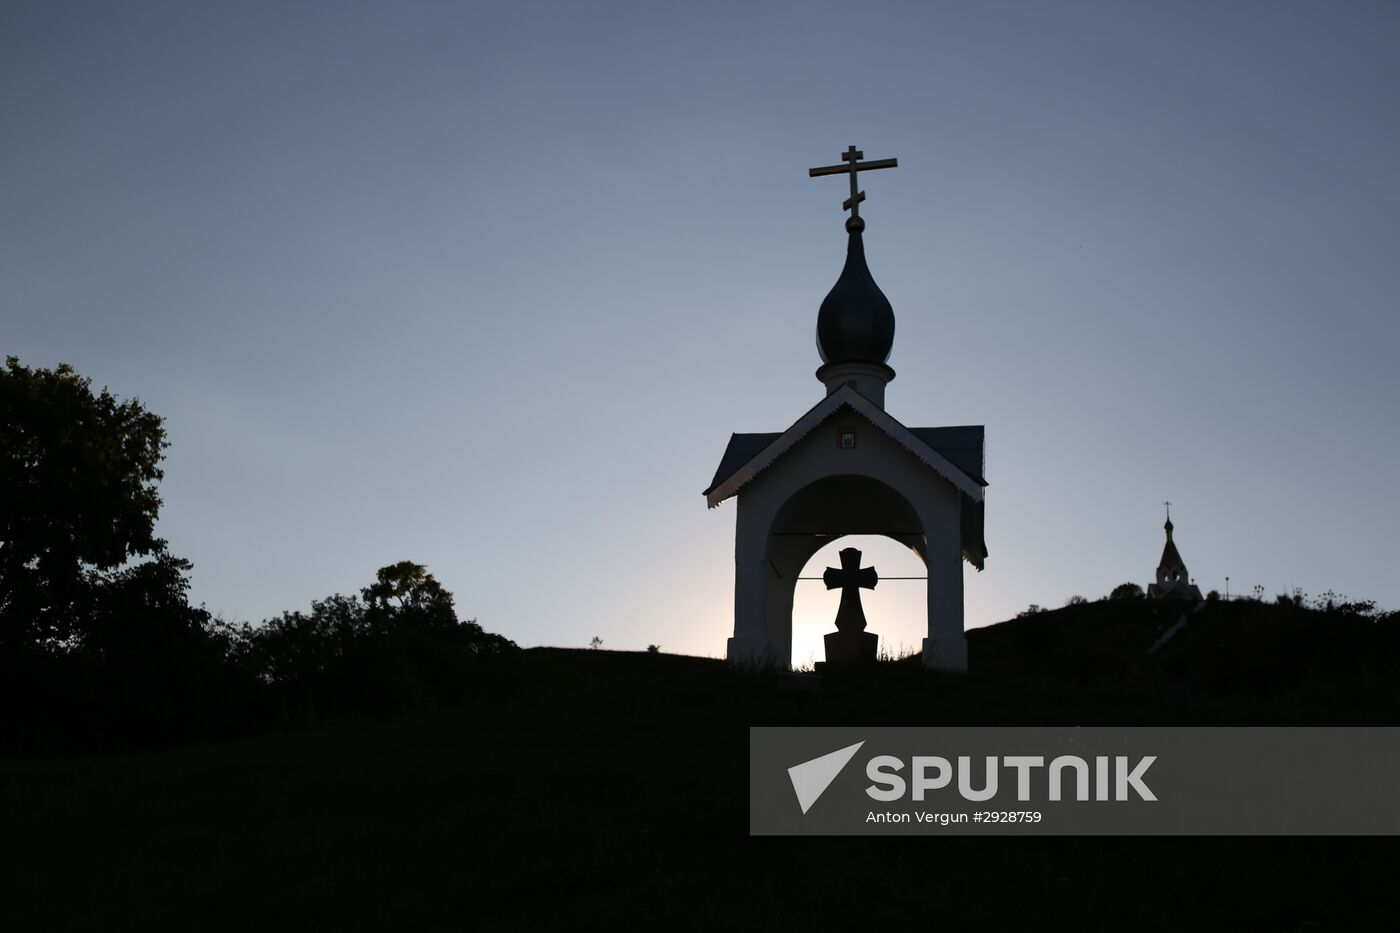 Holy Trinity Kholki Monastery in Belgorod region